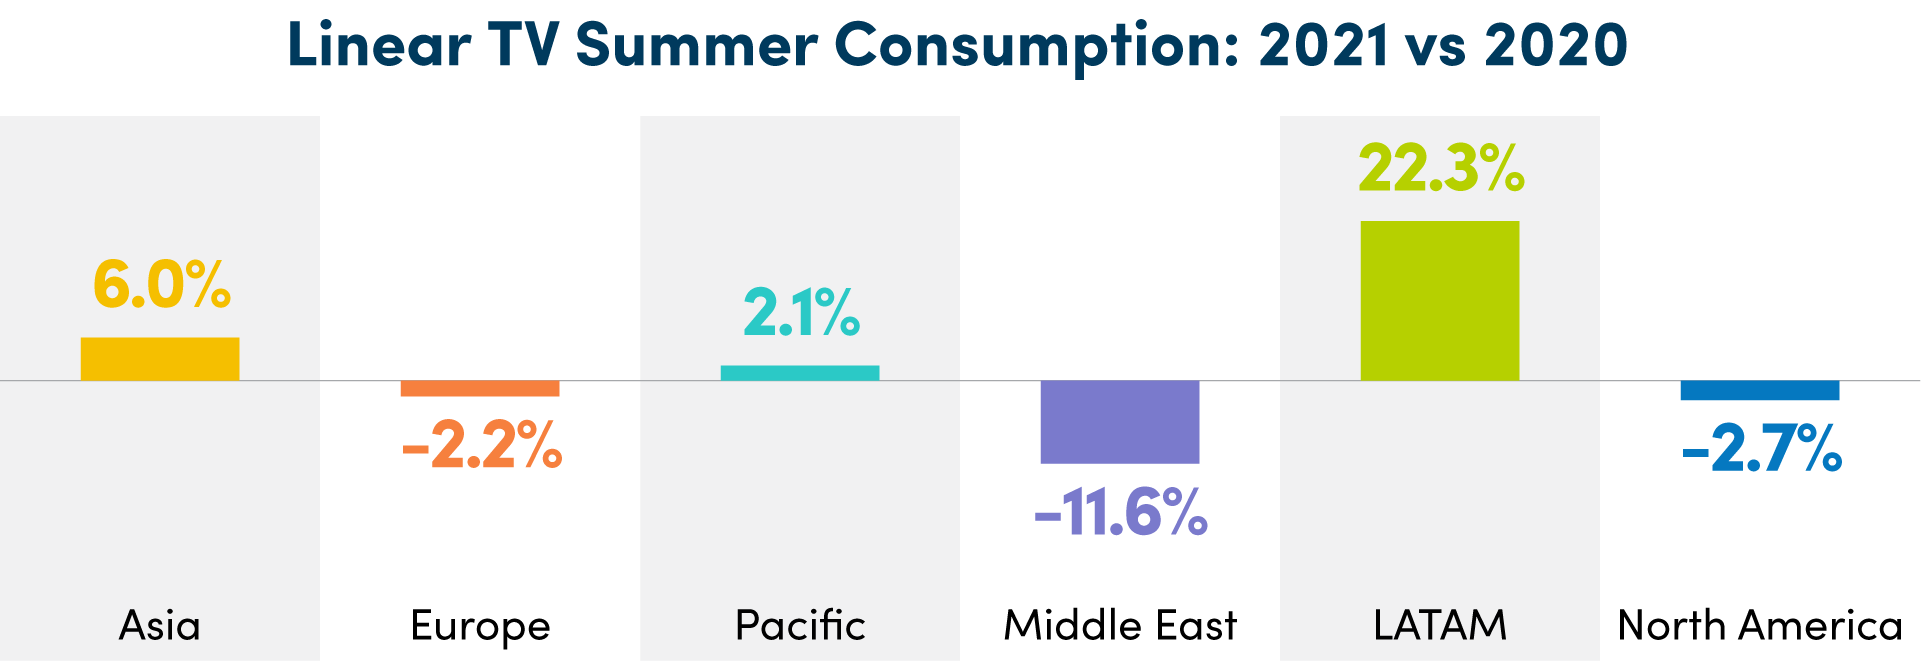 Linear TV Summer Consumption: 2021 vs 2020